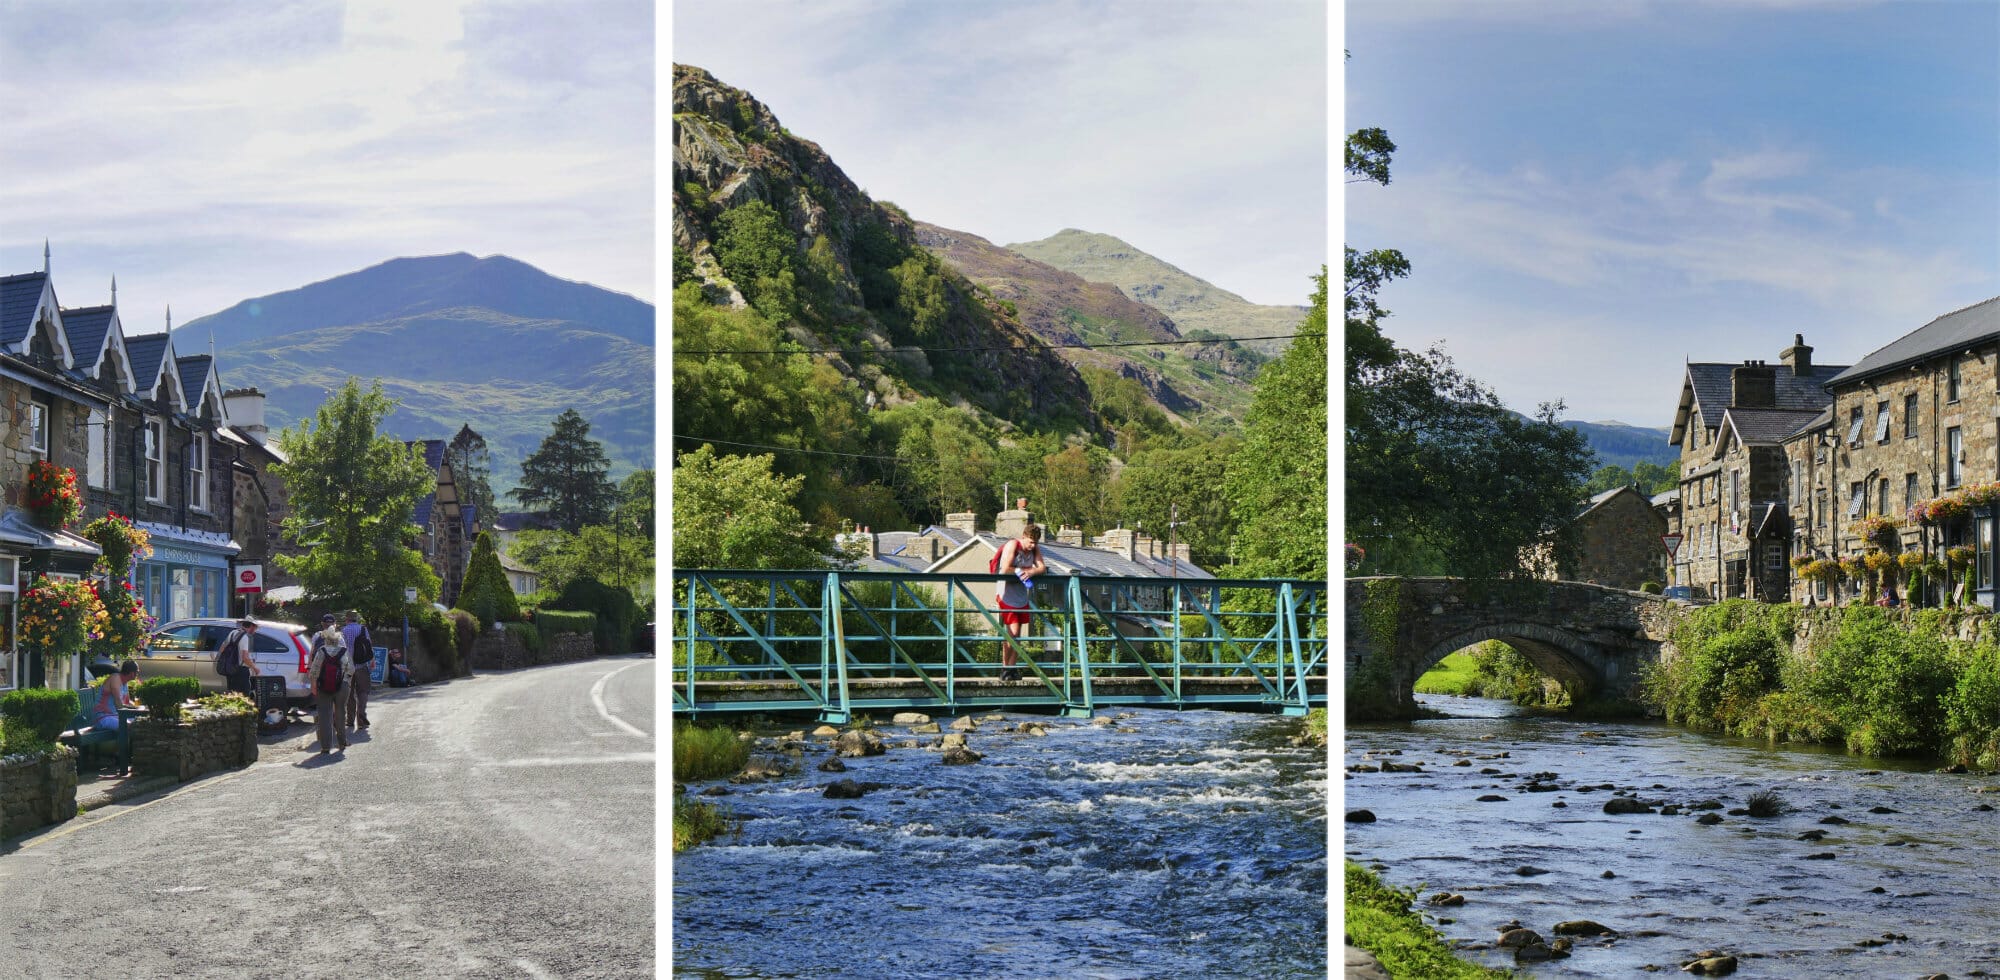 17+ Charming Things to Do in Beddgelert, Wales (+ Full Travel Guide) via @girlsgonelondon